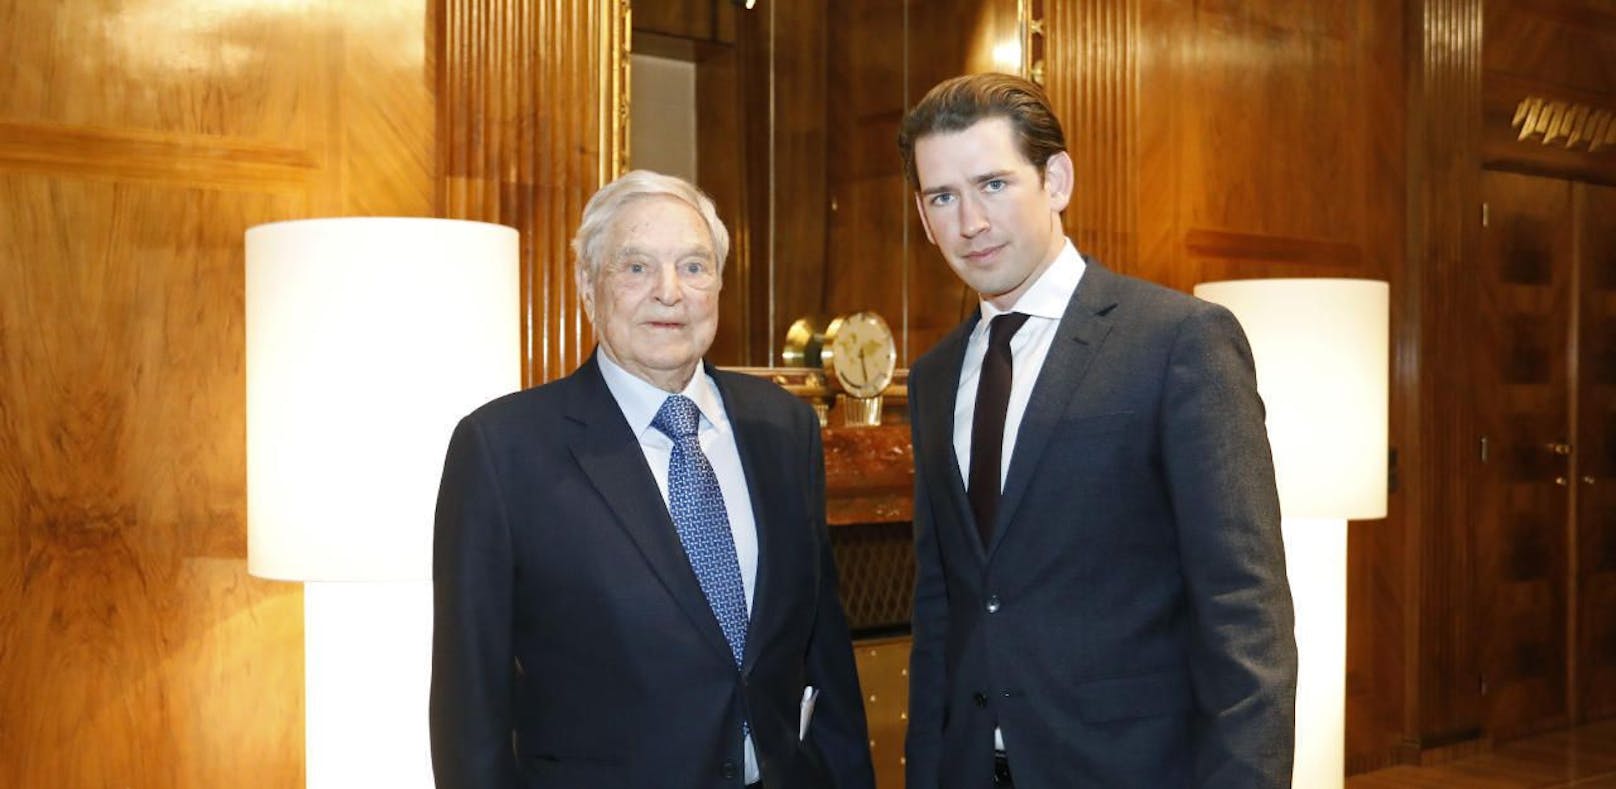  Bundeskanzler Sebastian Kurz (ÖVP, r.) traf kürzlich den US-Milliardär und Philanthropen George Soros in Wien.